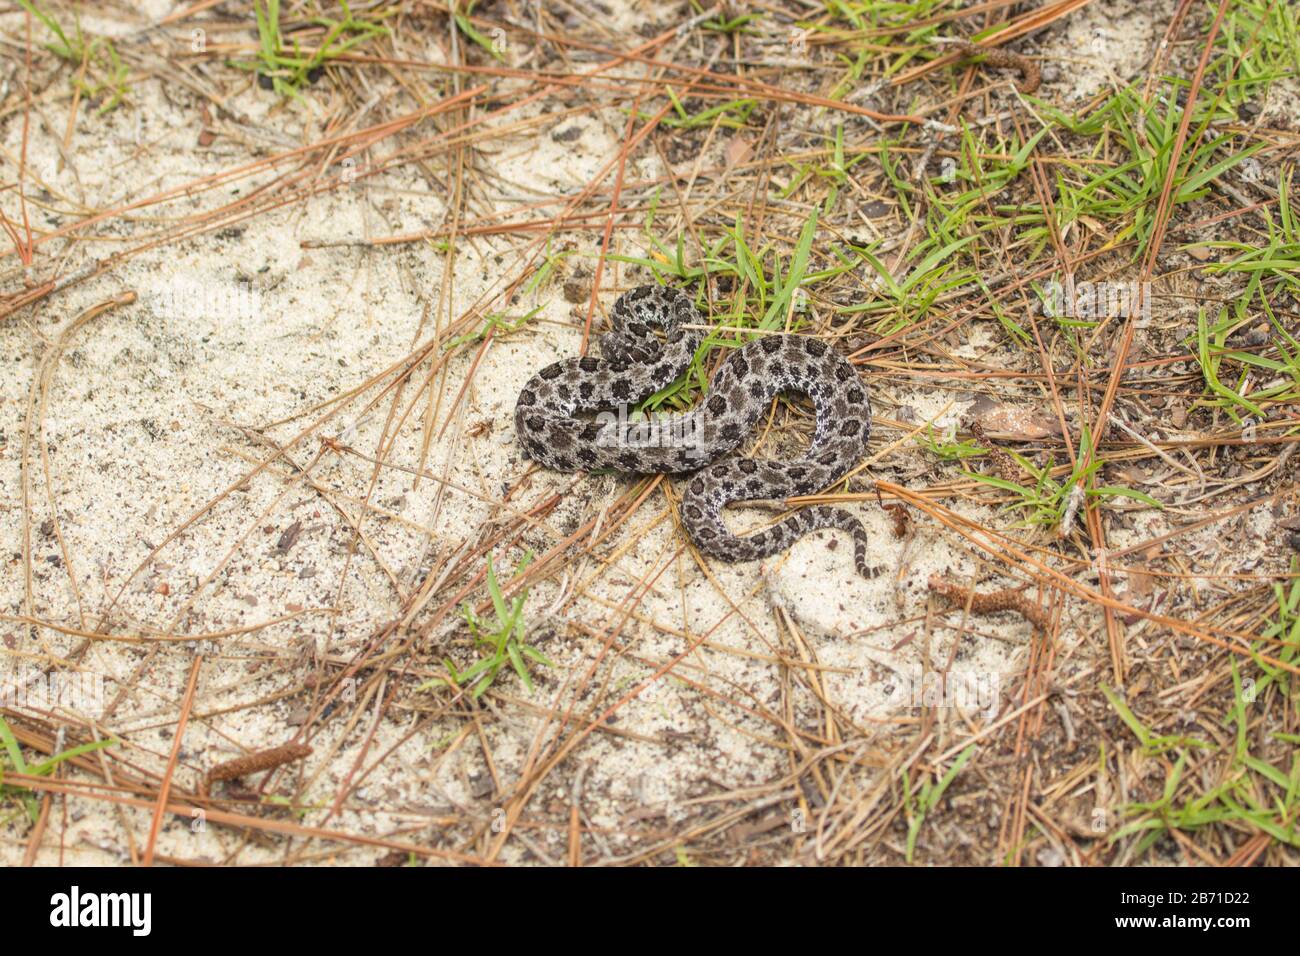 pygmy rattle Snake (Sistrurus miliarius) im Okaloosa County, Florida, USA Stock Photo